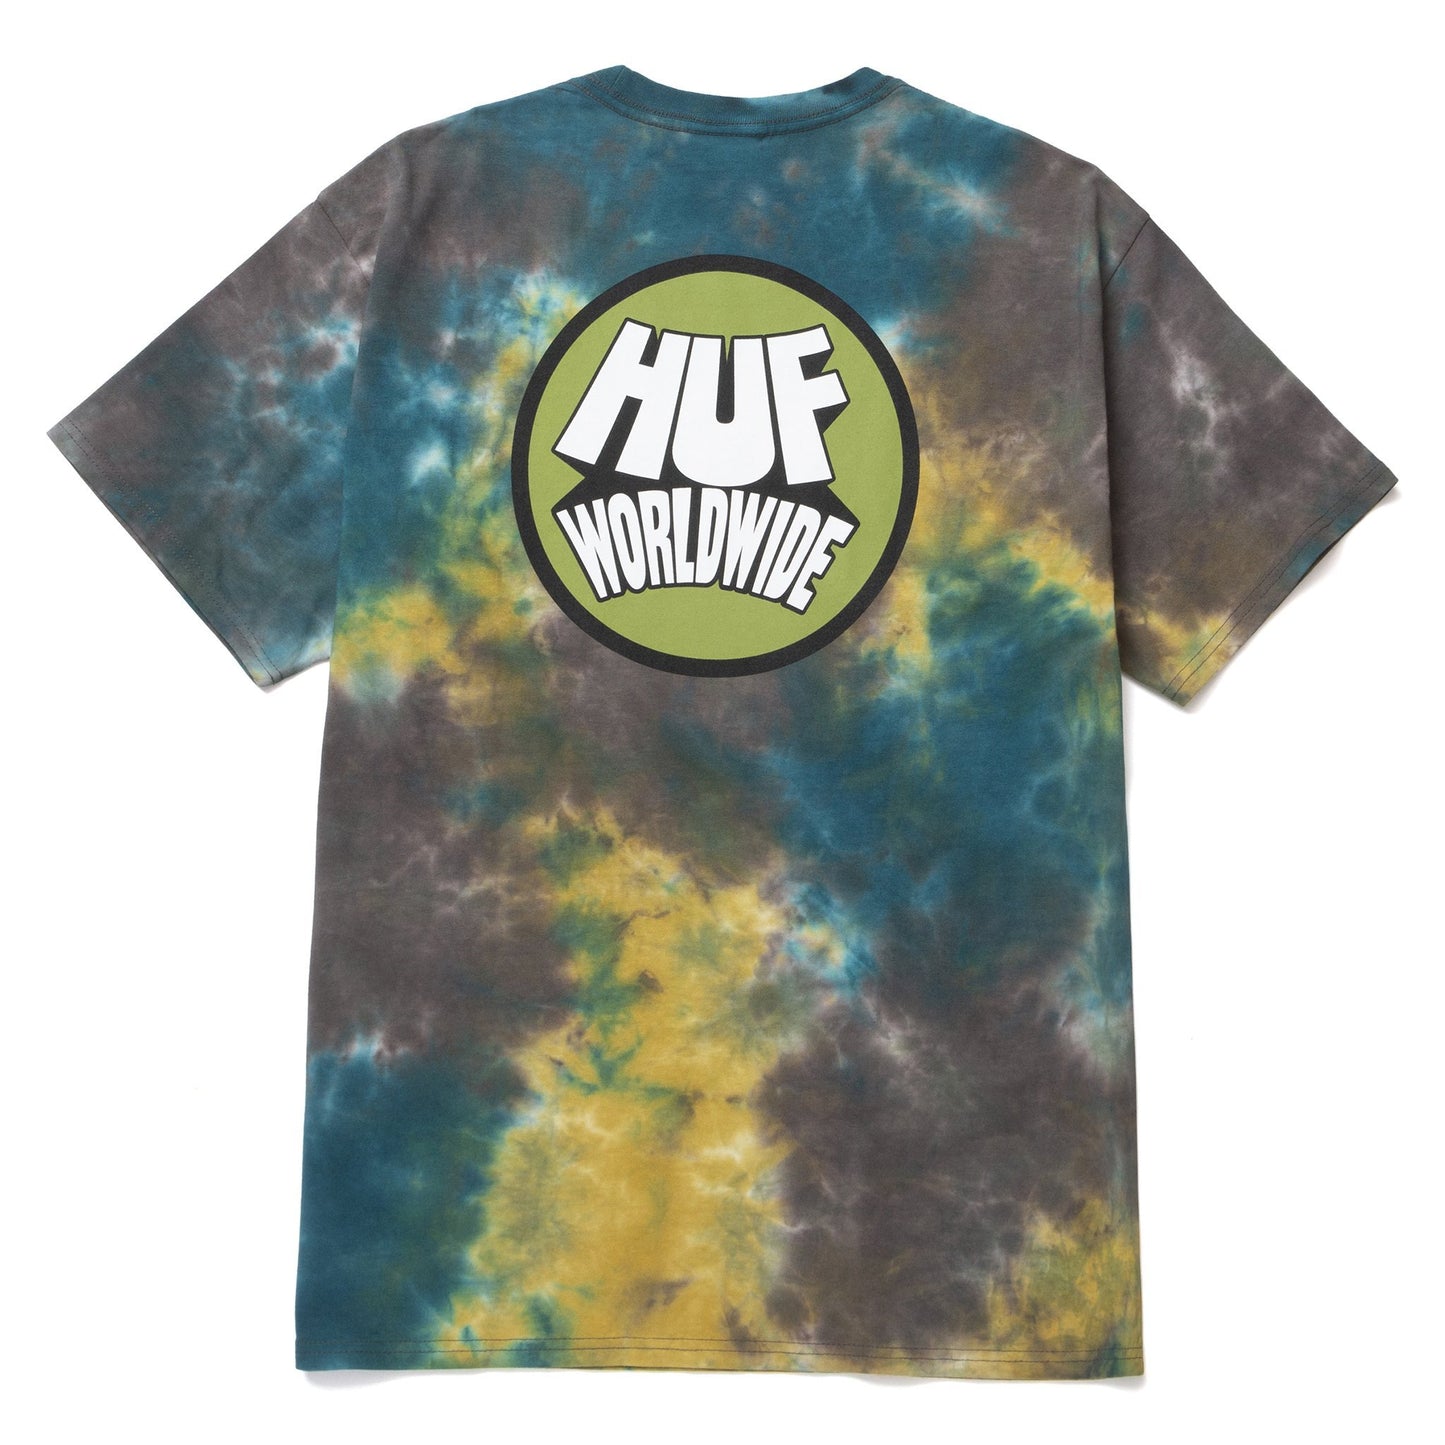 HUF Selecta Dyed T-Shirt